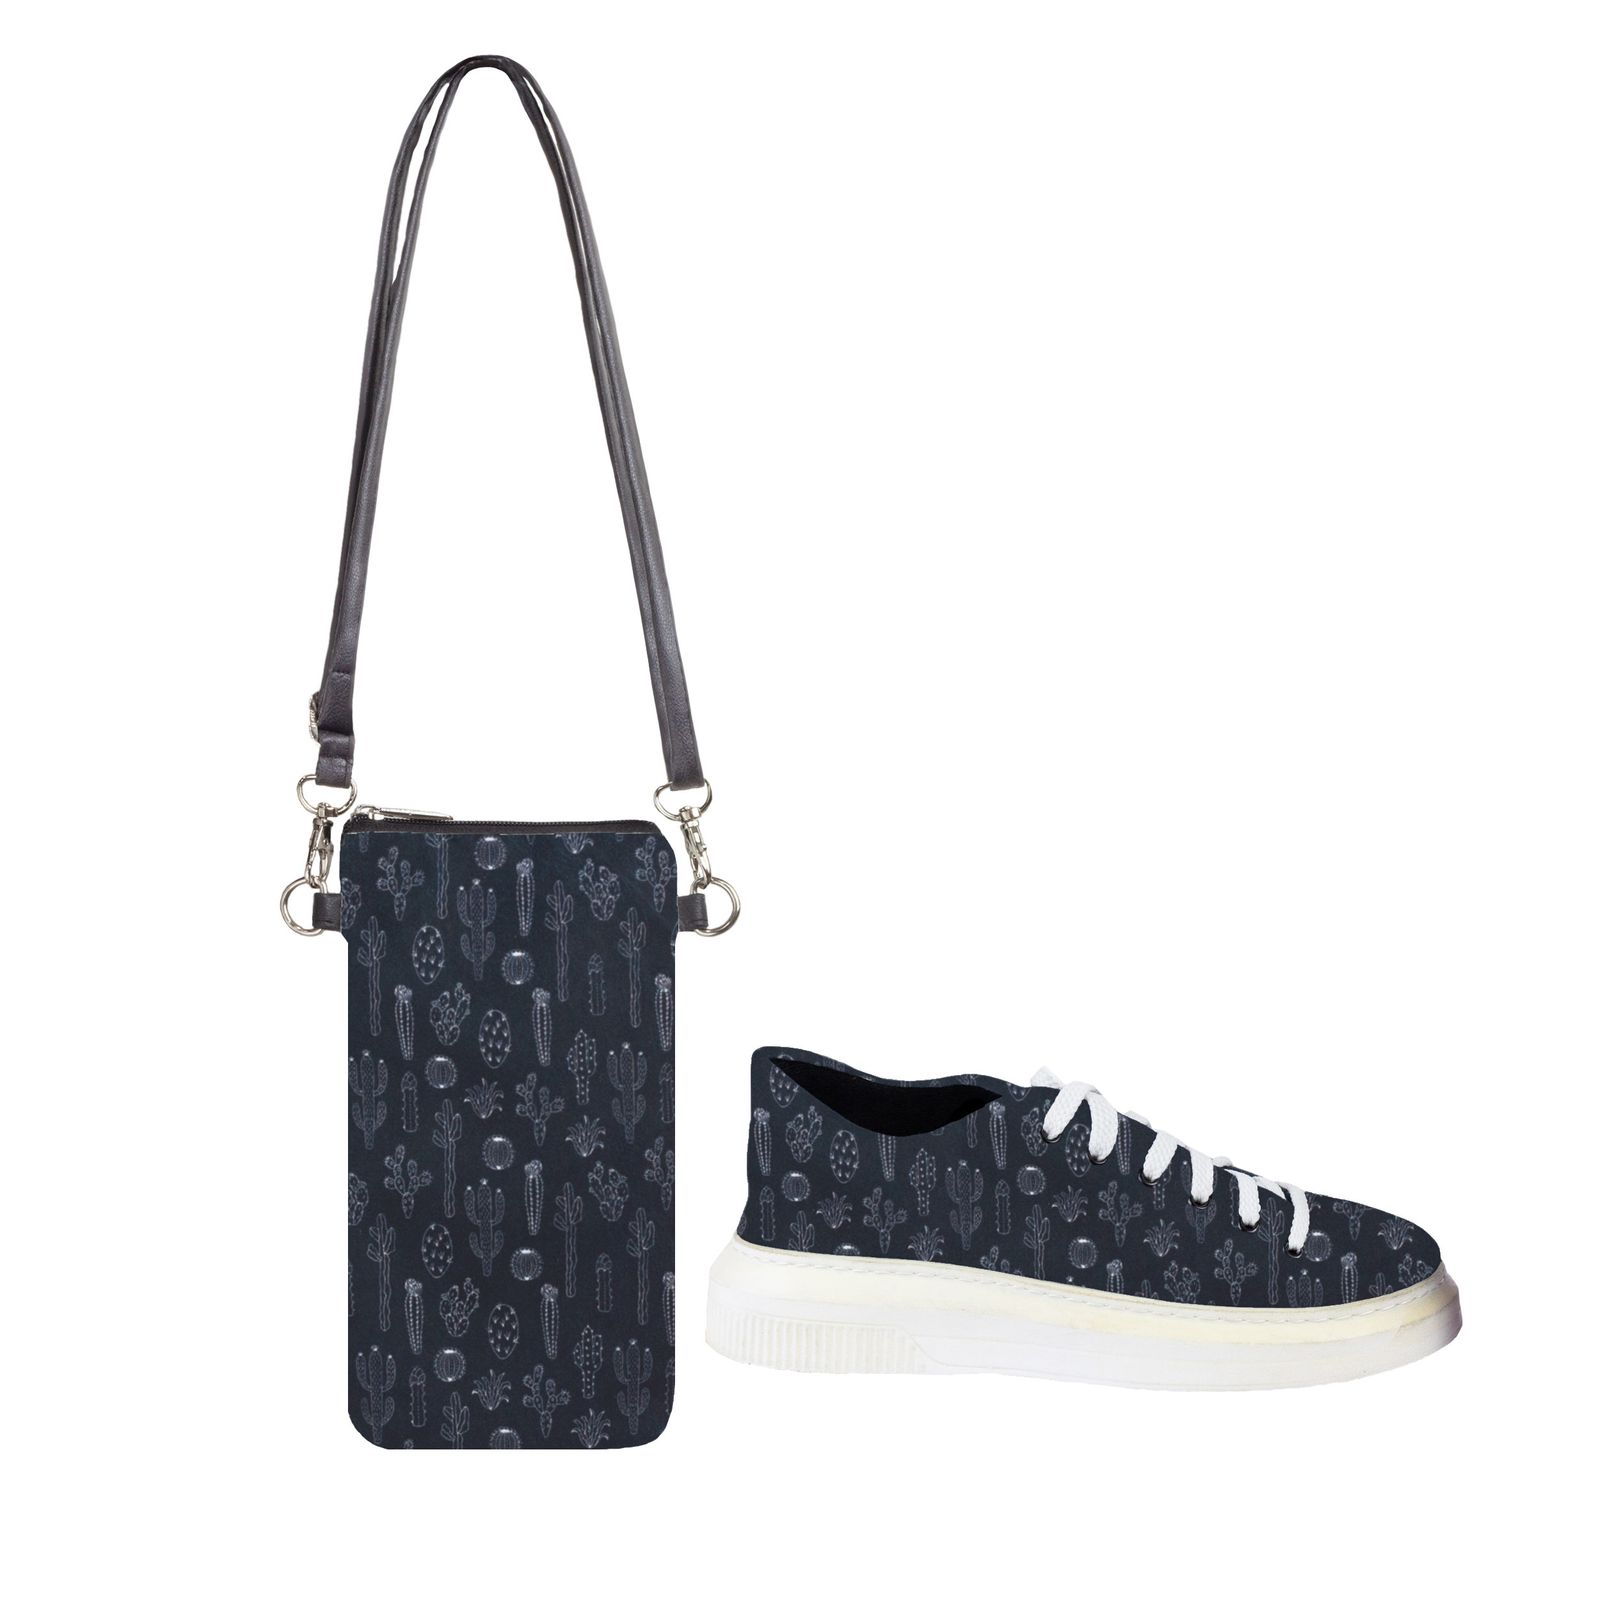 ست کیف و کفش زنانه مدل کاکتوس کد bllack -  - 1